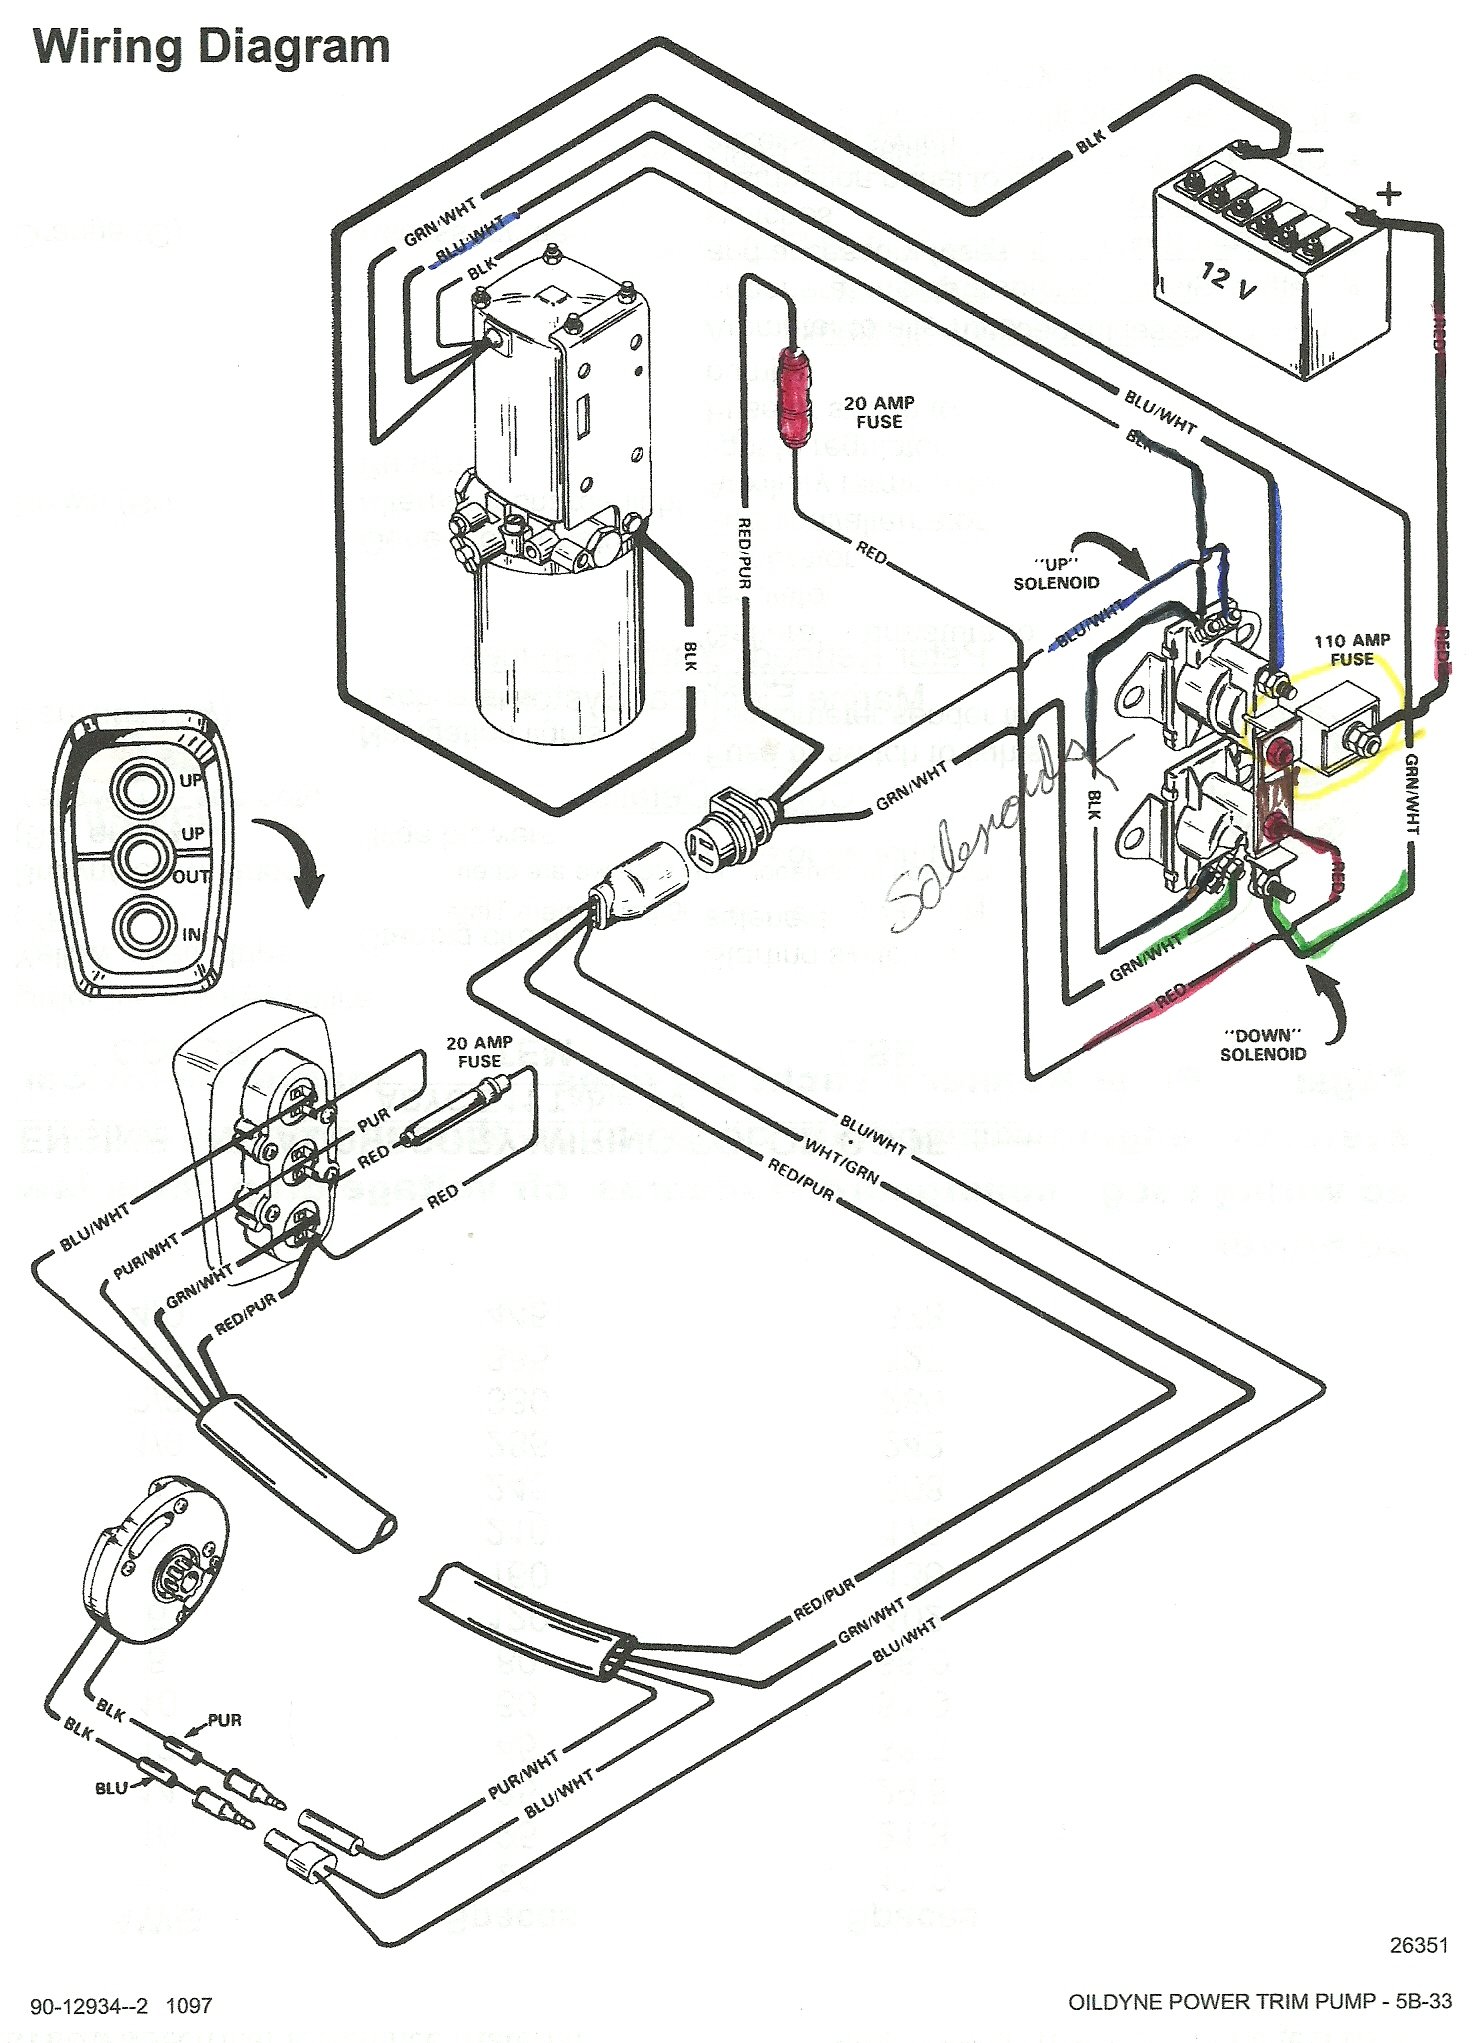 mercruiser 5.7 wiring diagram